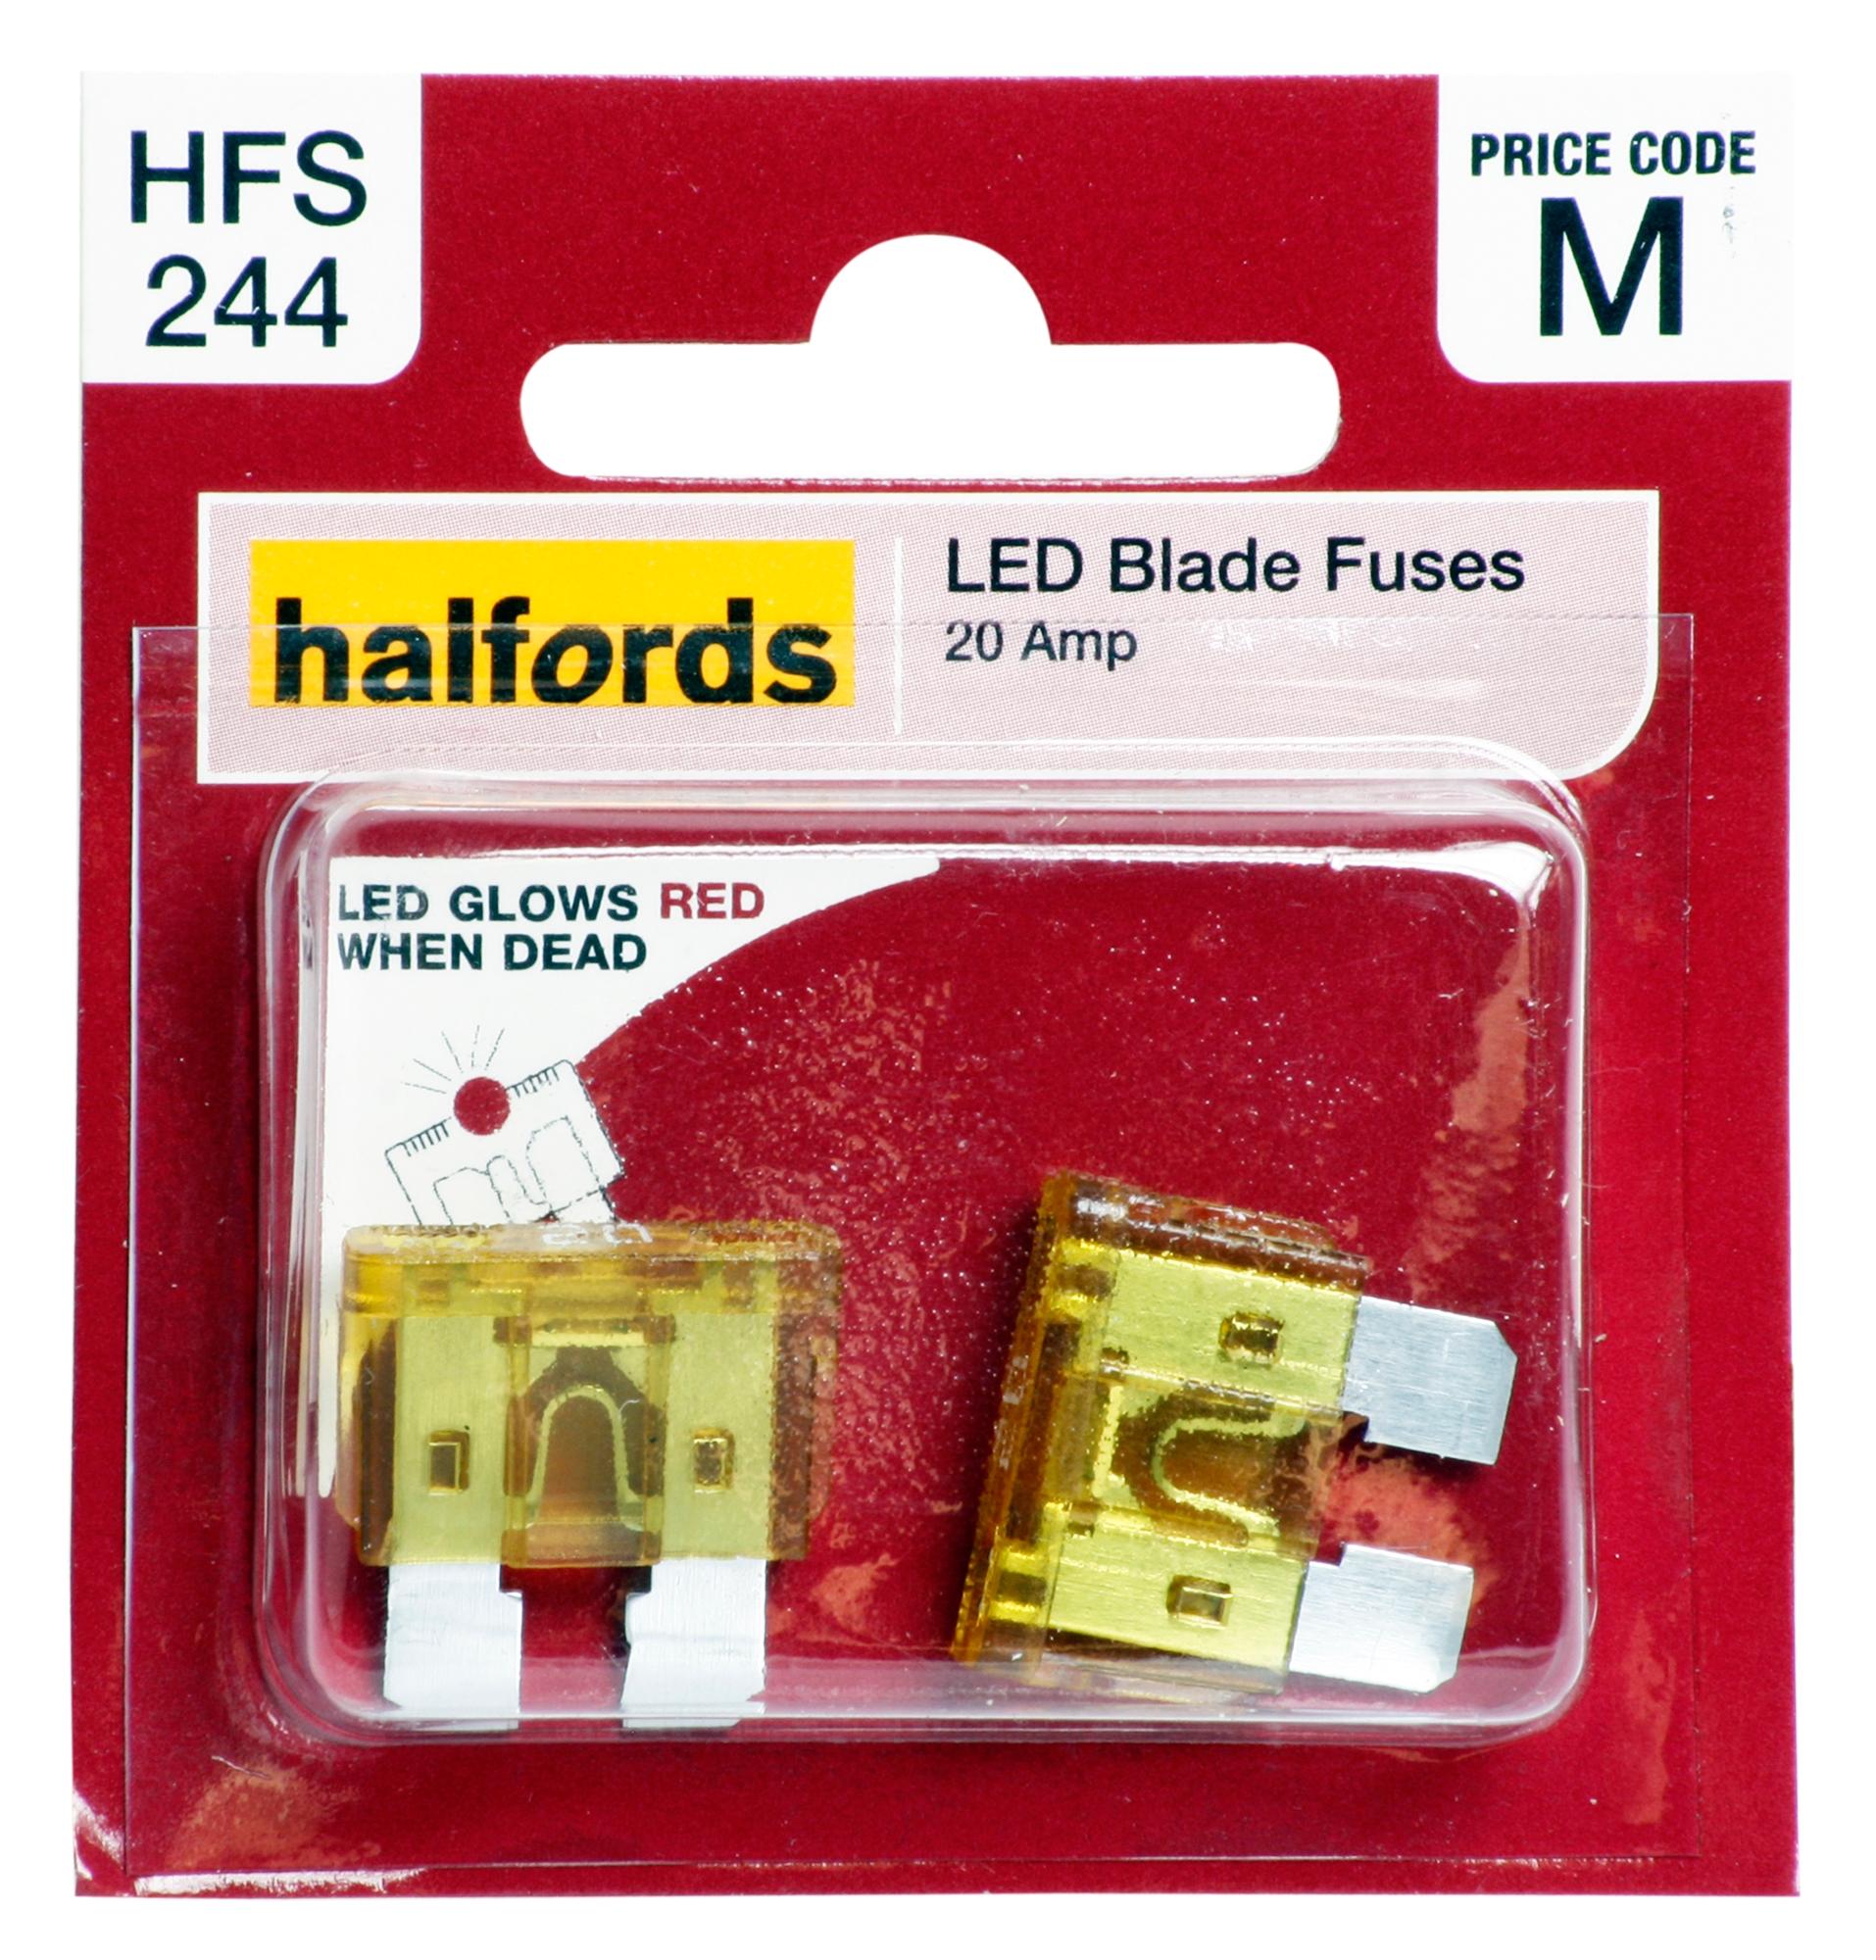 Halfords Led Blade Fuses 20 Amp (Hfs244)